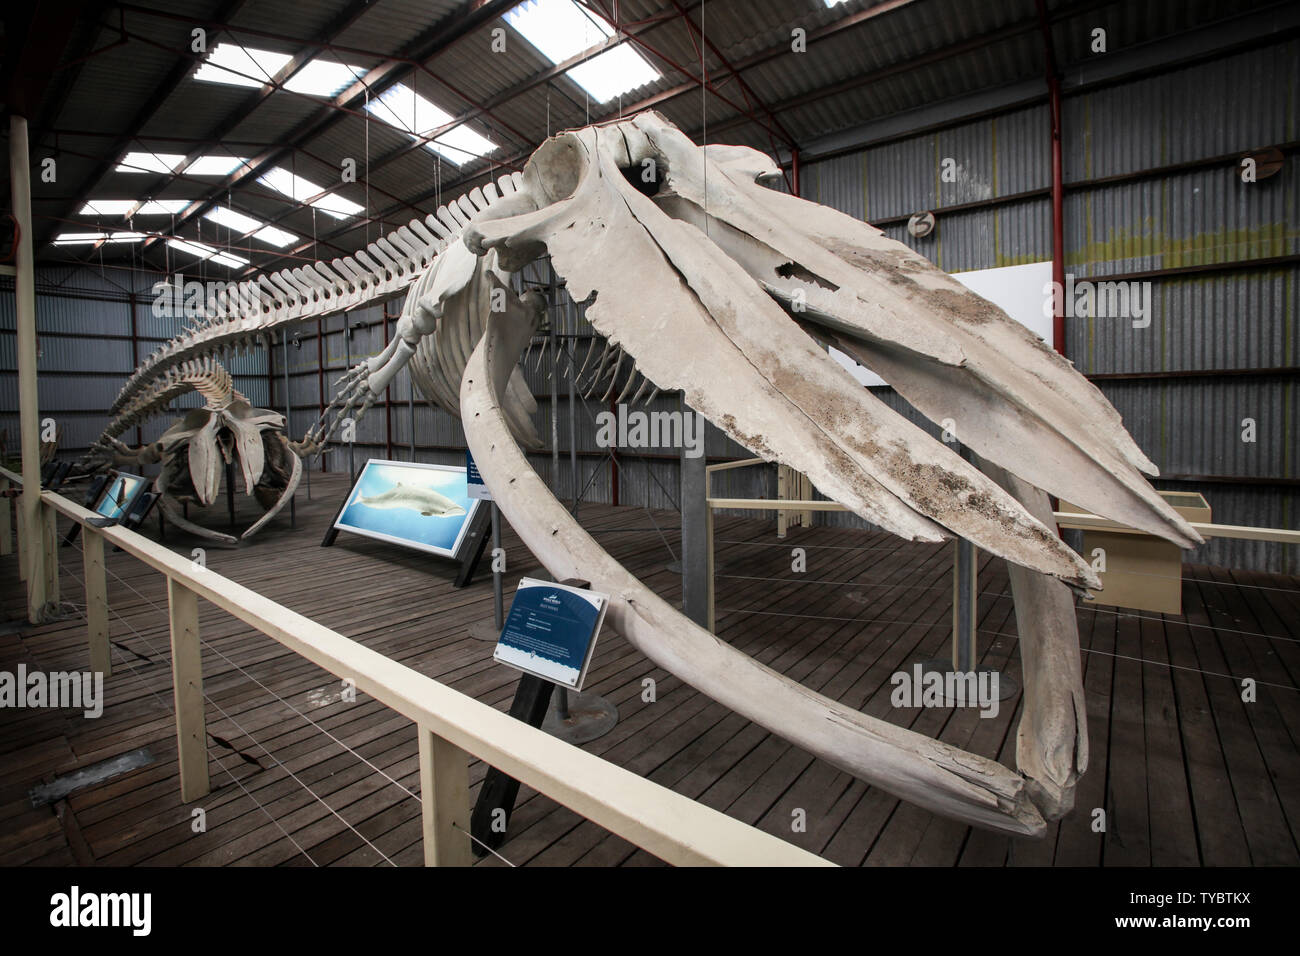 Scheletro di una balena blu al mondo di balena una storica stazione baleniera in Albany, Australia occidentale Foto Stock